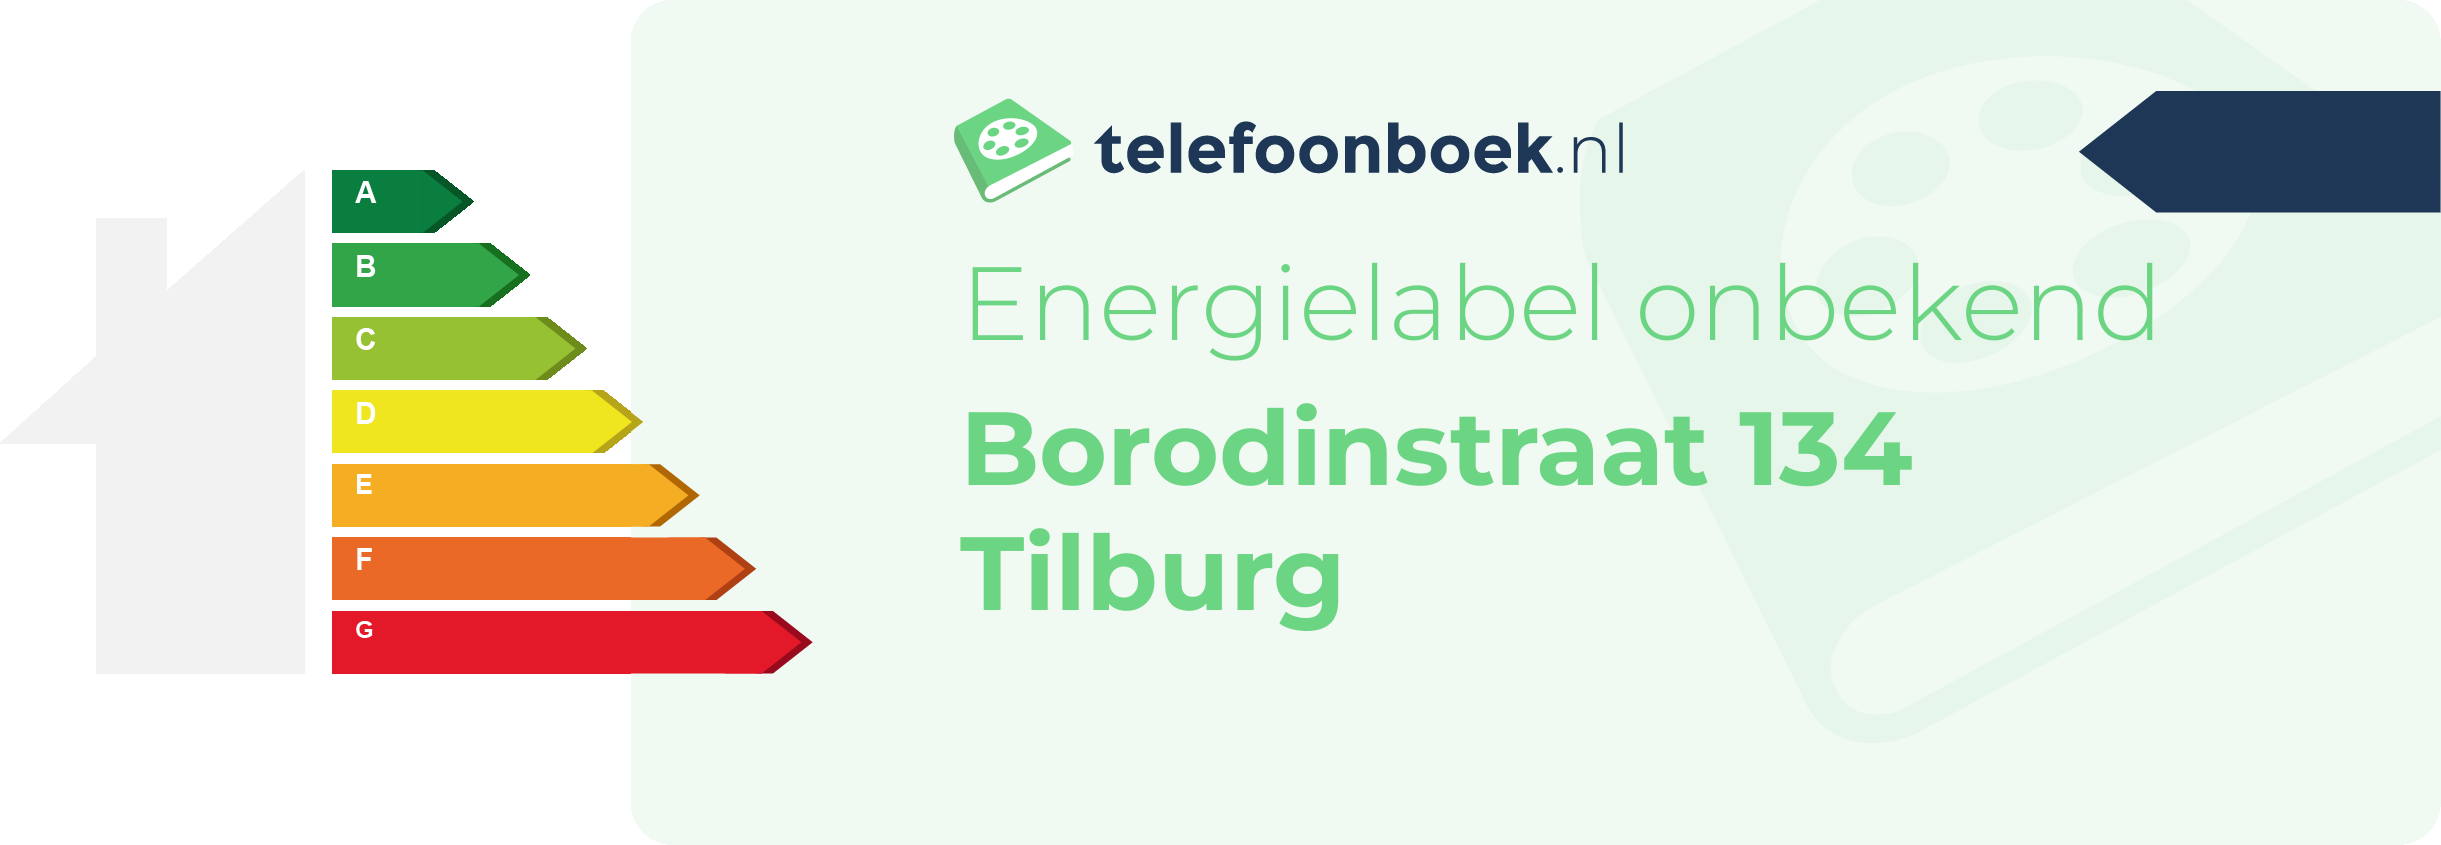 Energielabel Borodinstraat 134 Tilburg